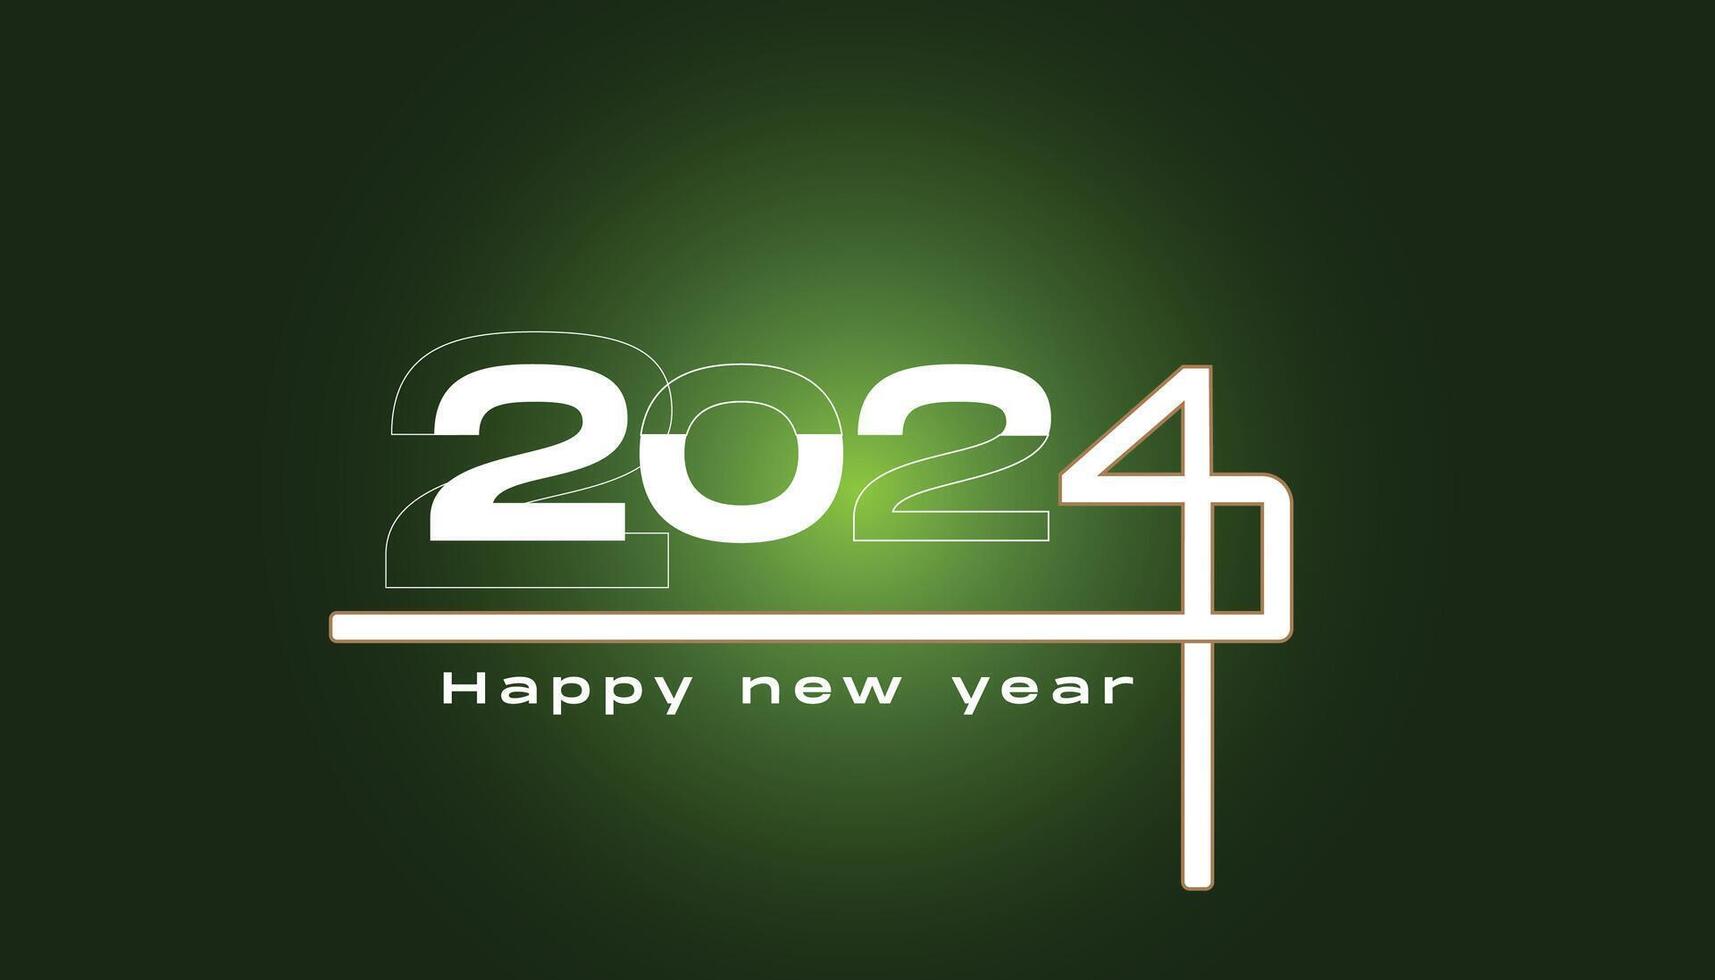 2024 contento nuevo año texto para saludo tarjeta vector